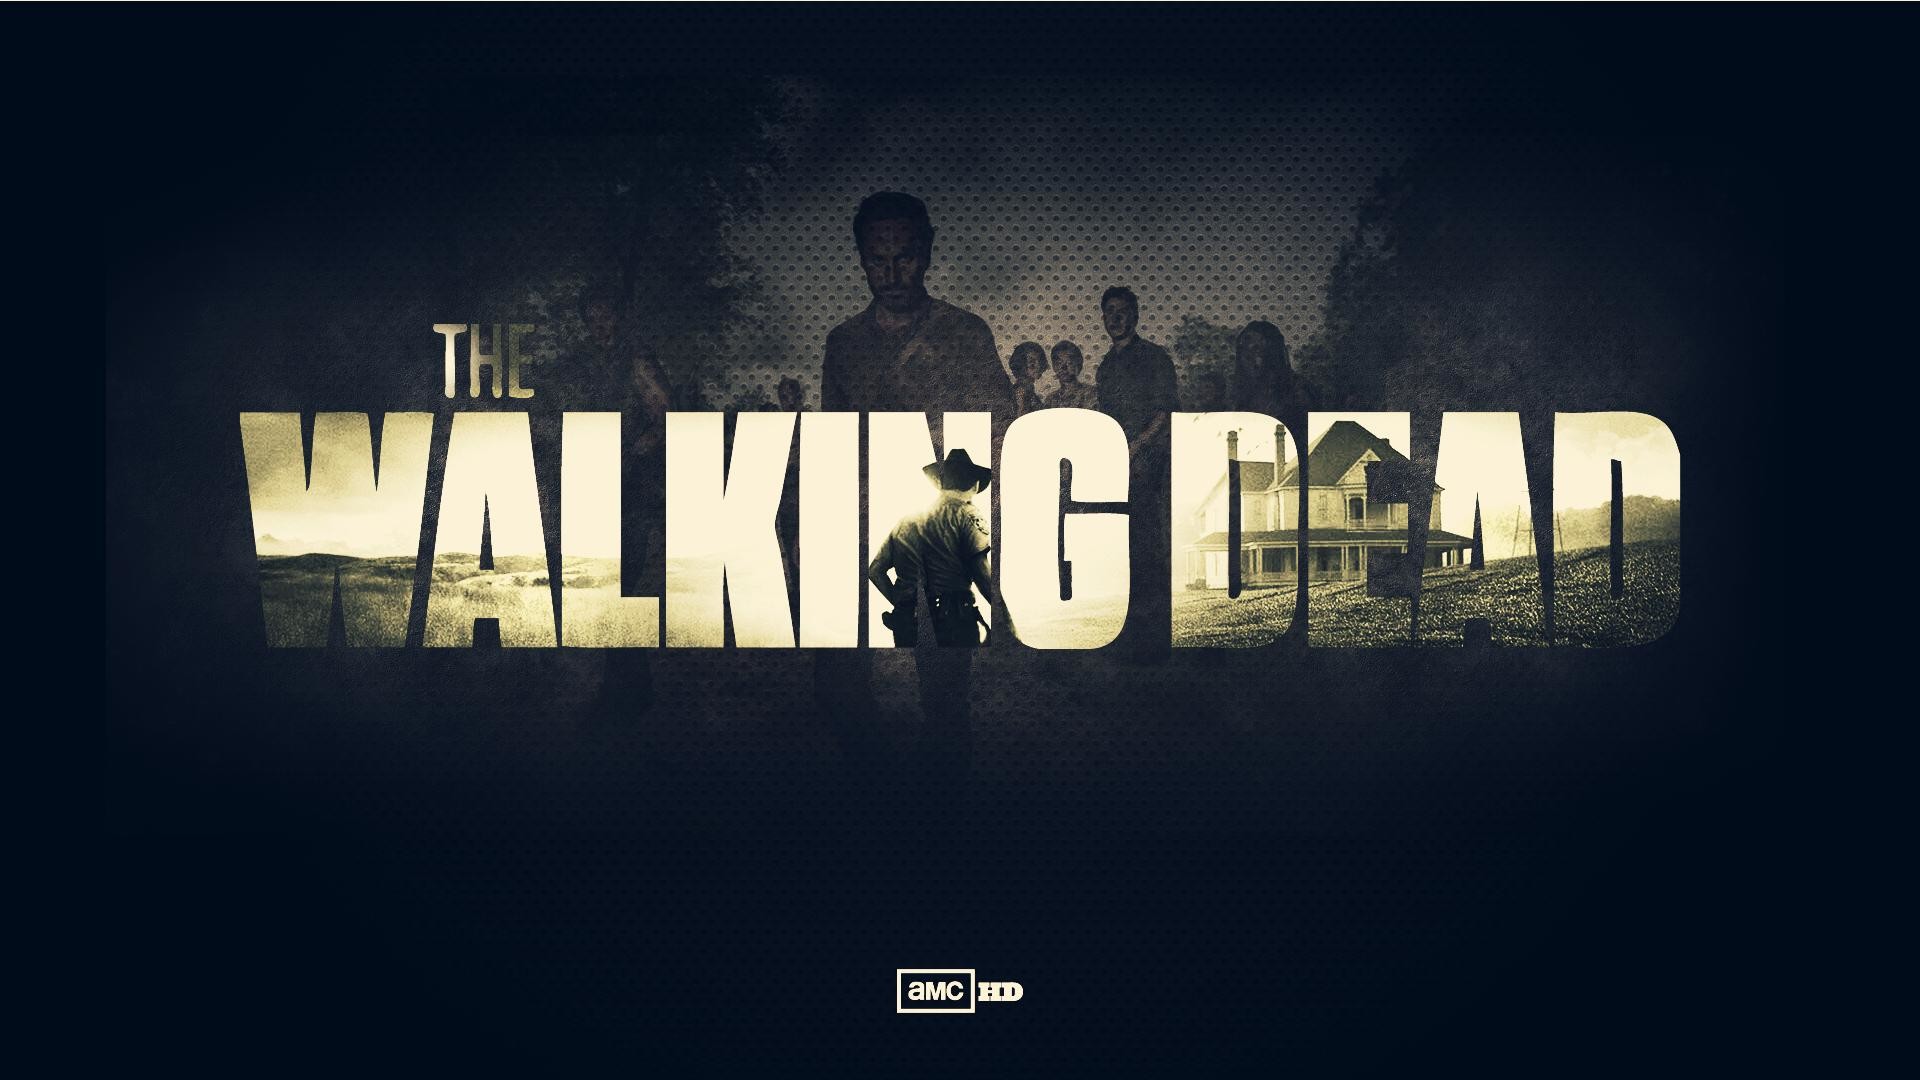 1920x1080 walking dead zombie wallpaper theme Walking Dead Zombie Wallpaper Theme